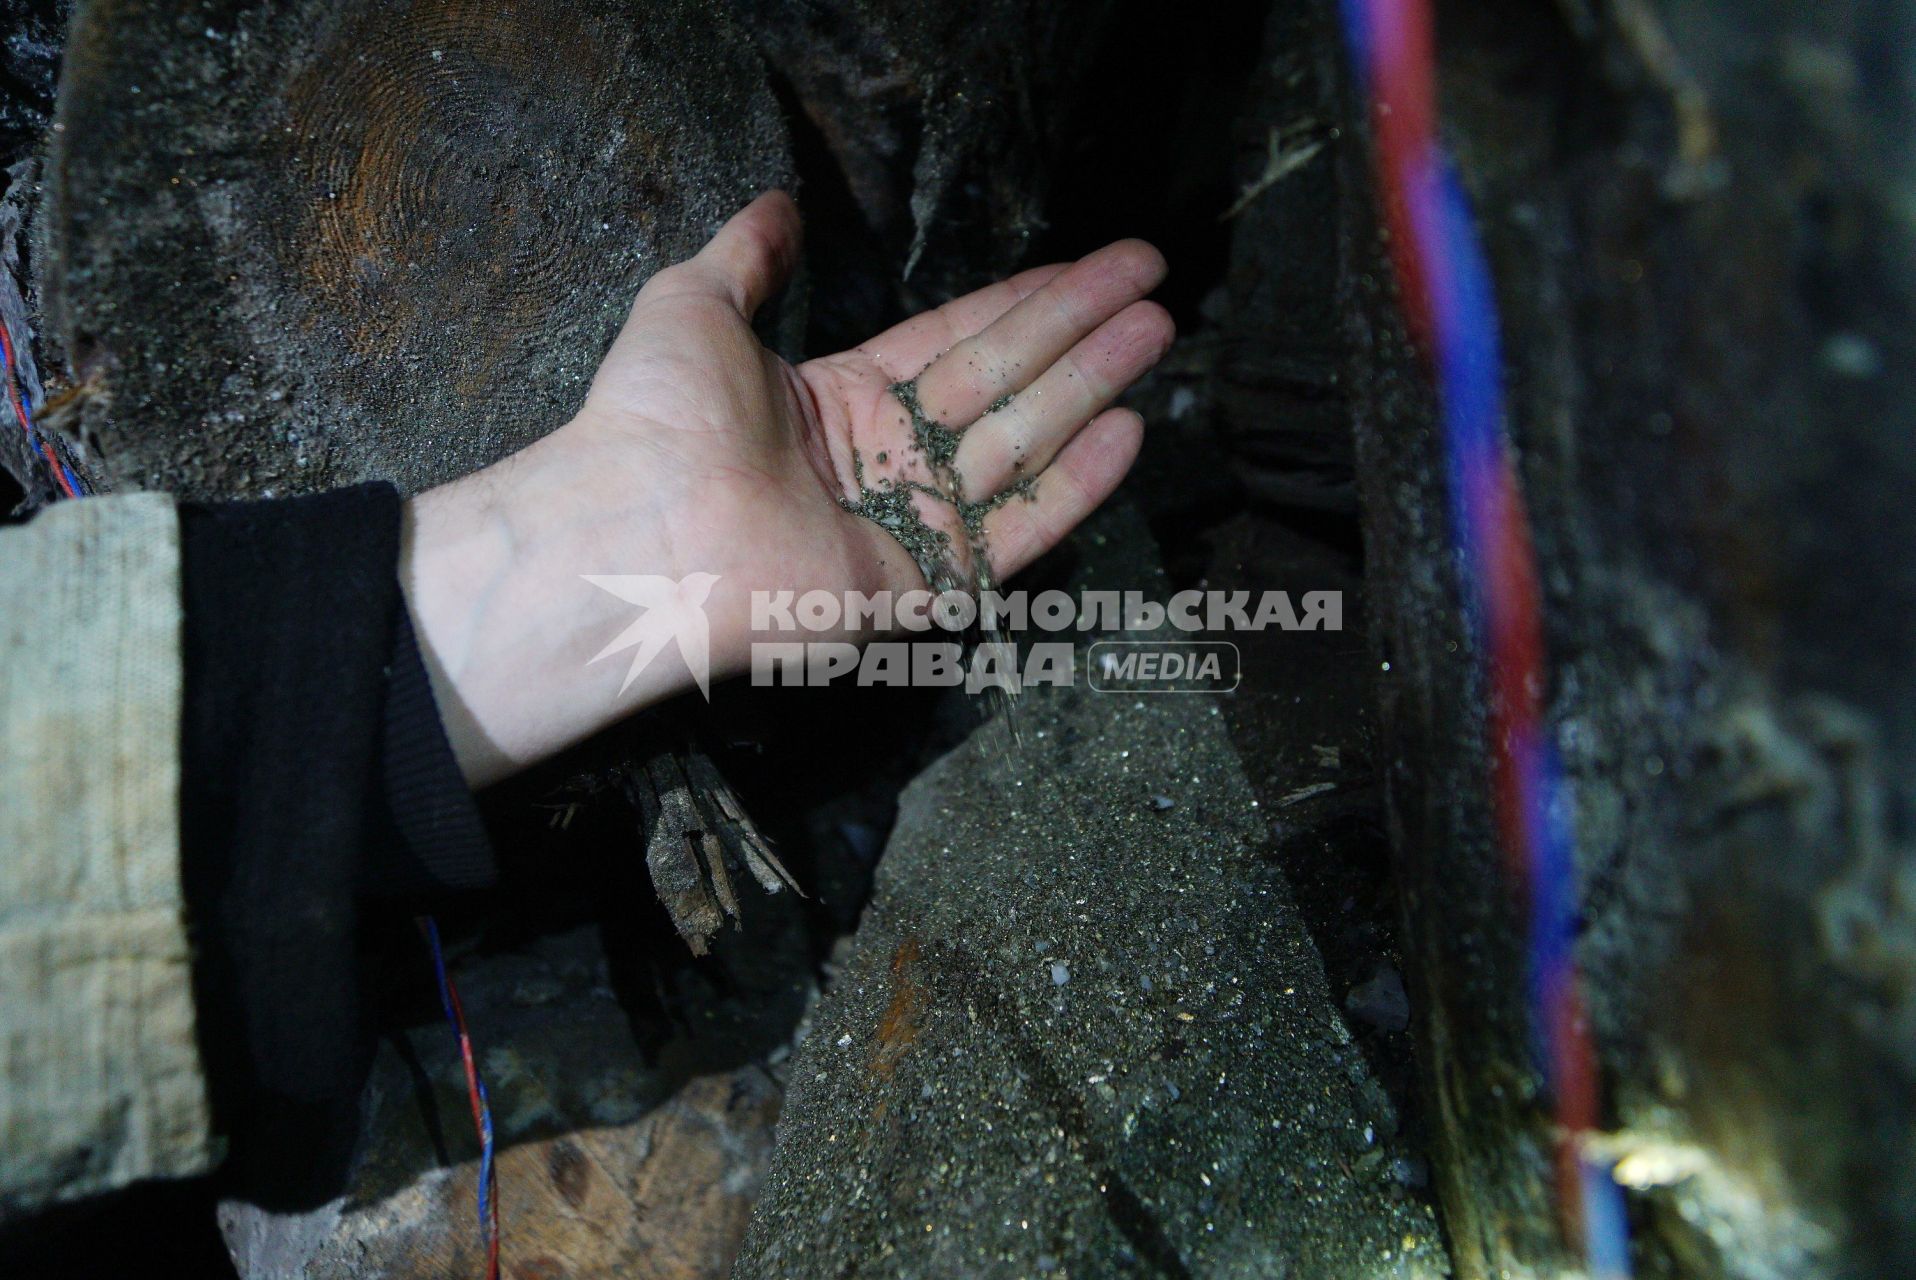 Свердловская область, г. Березовский. Березовский золотодобывающий рудник. Горняк в шахте держит горную породу.